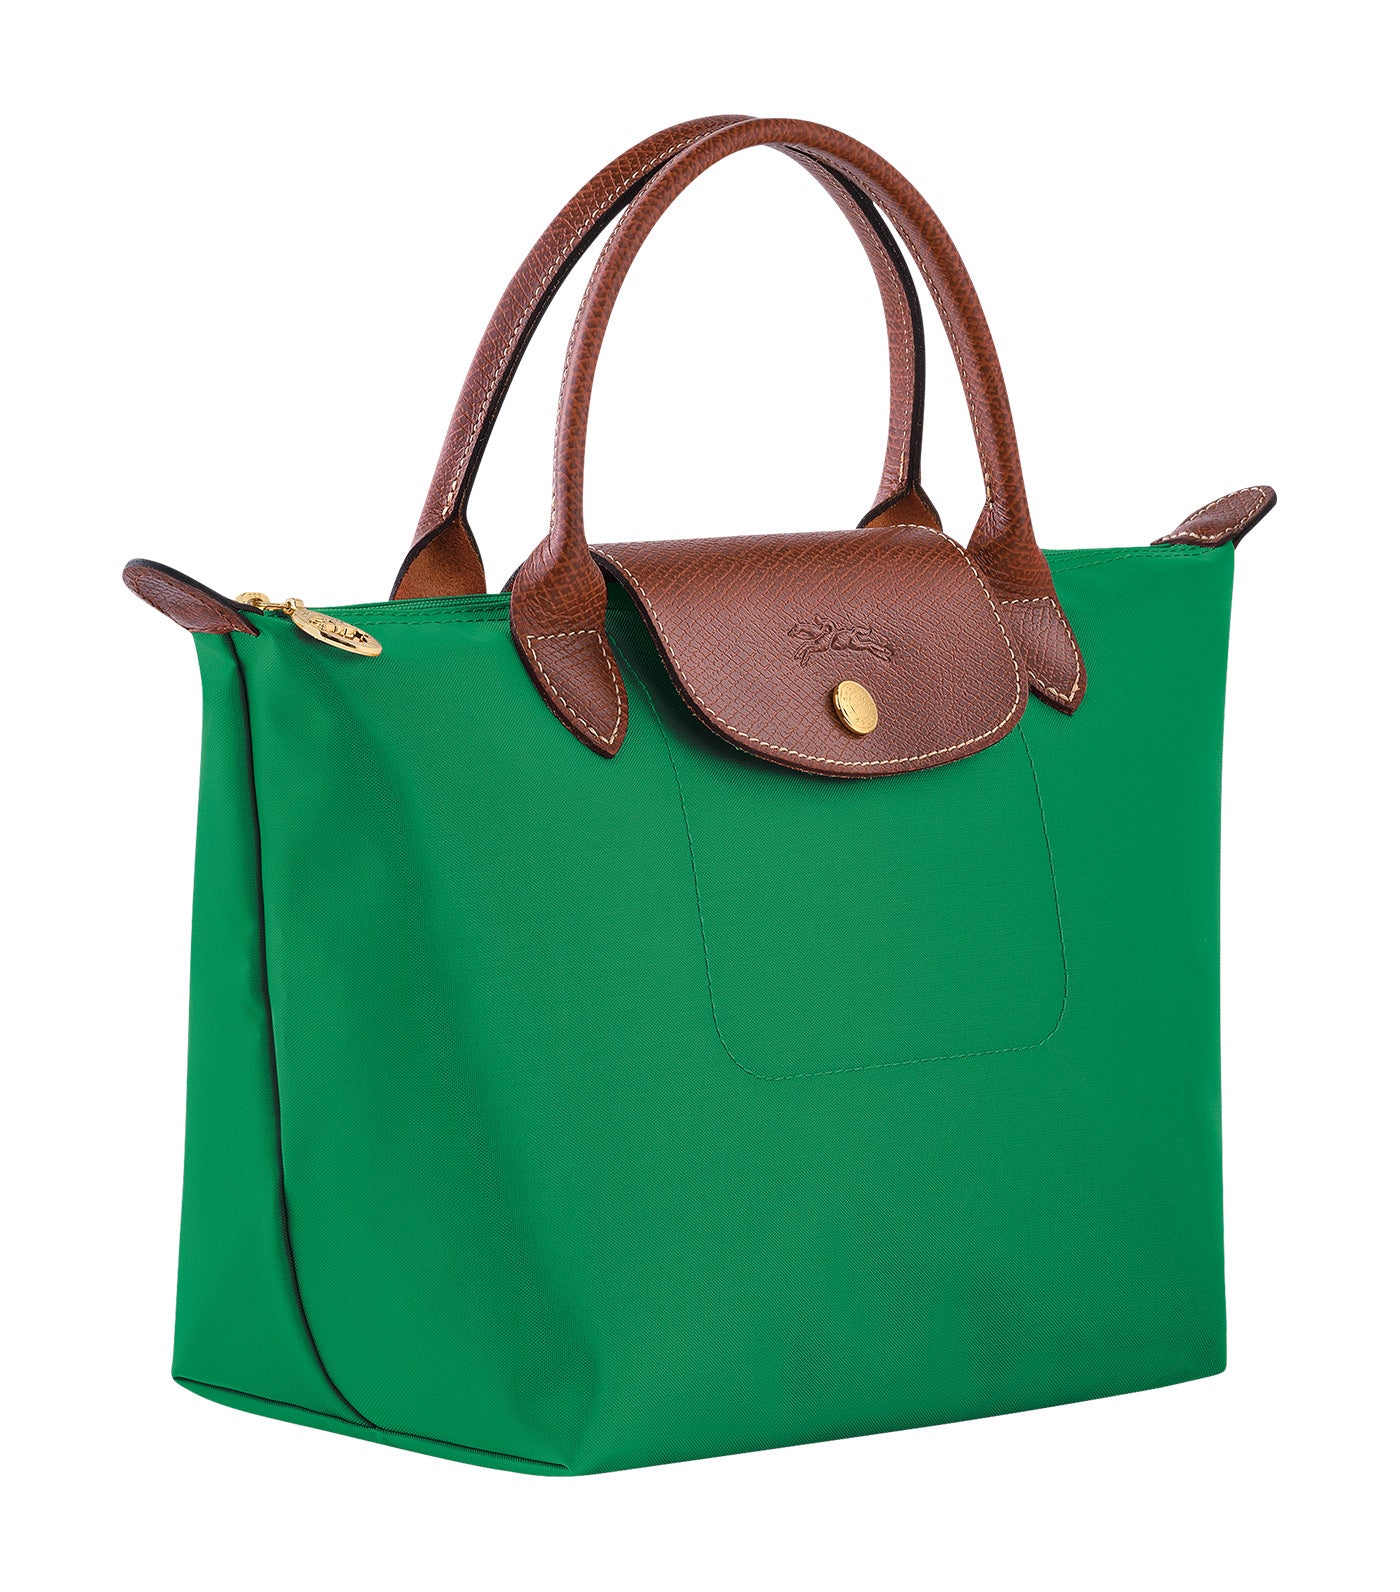 Le Pliage Original Handbag S Green